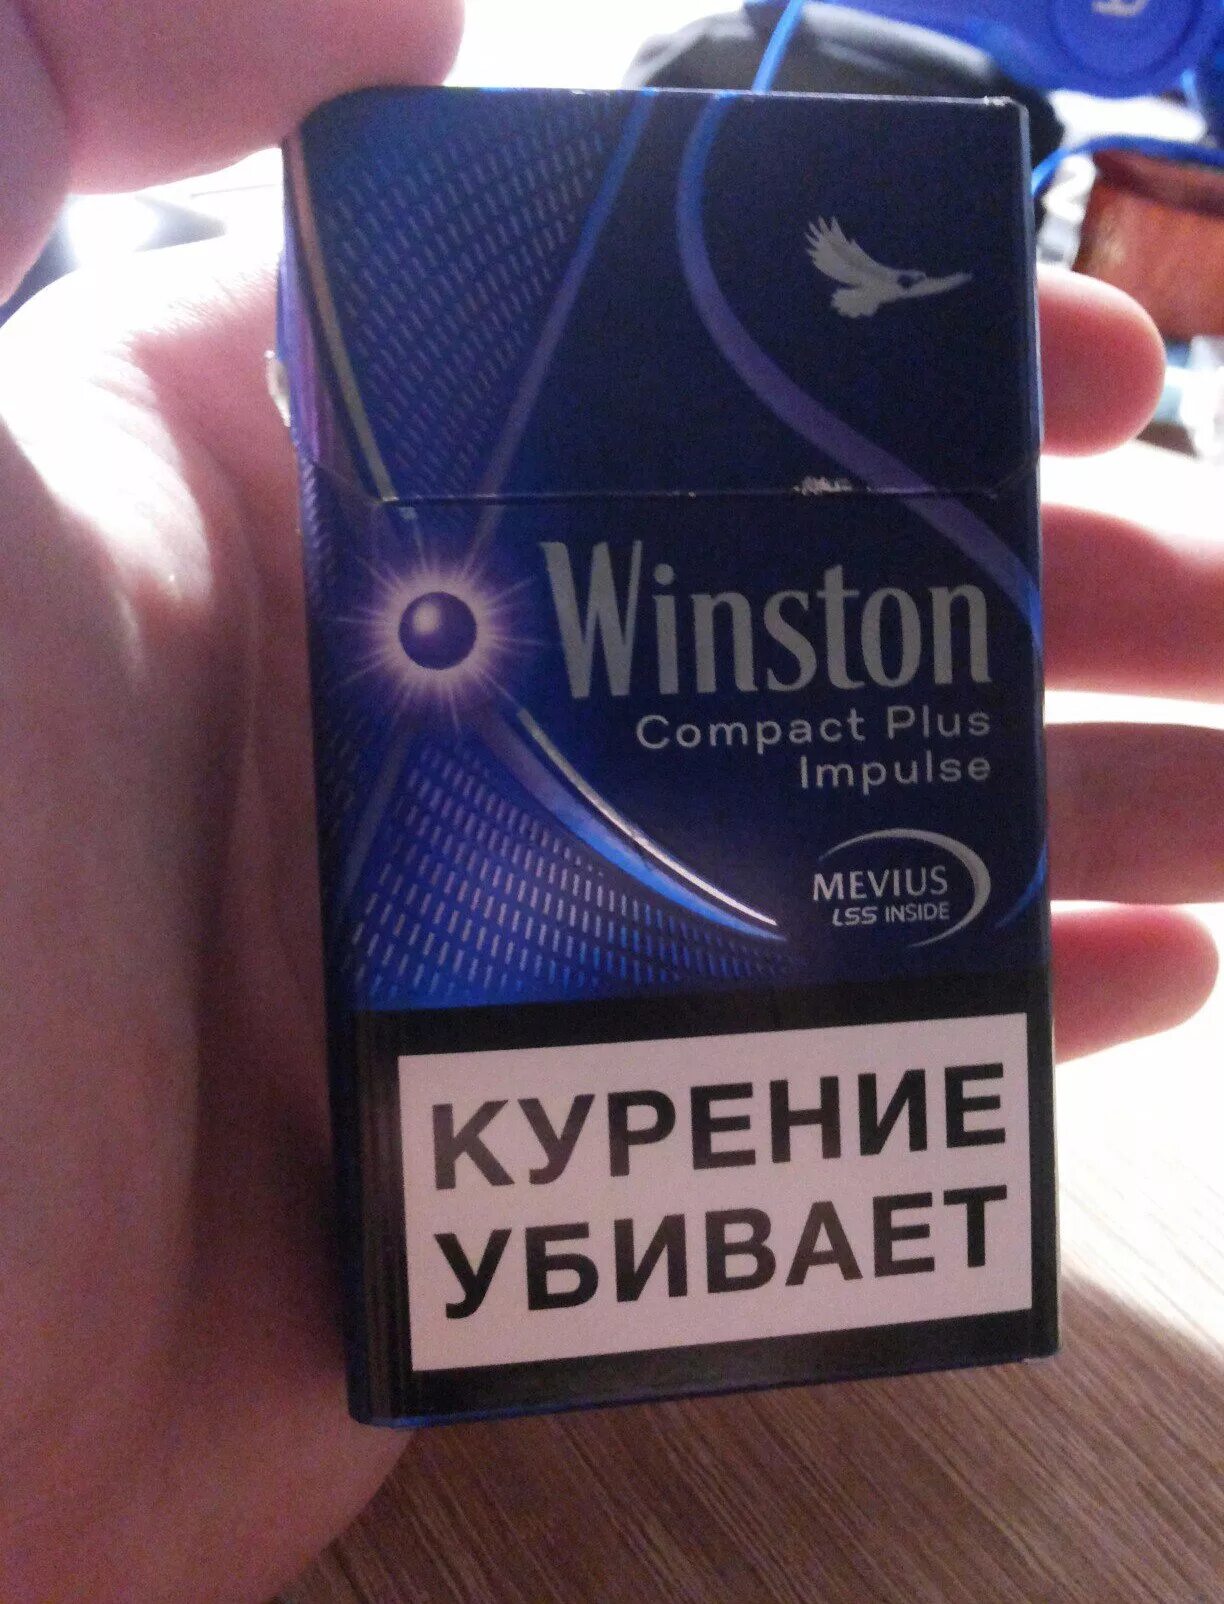 Сигареты Винстон тонкие с кнопкой. Сигареты Winston Compact с кнопкой. Сигареты Winston xstyle Duo. Winston xstyle Compact с кнопкой.